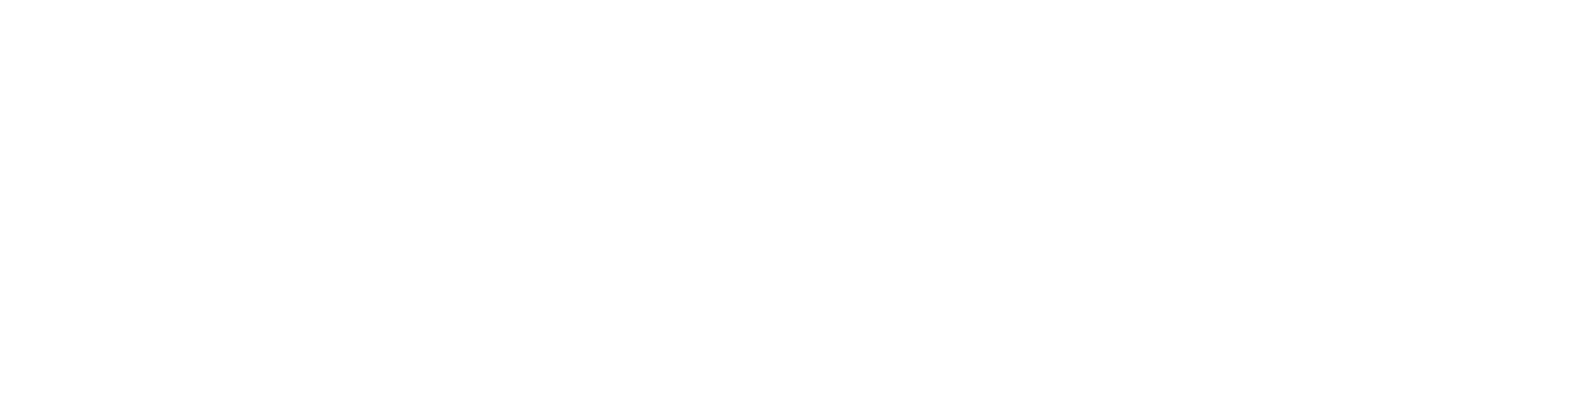 PropertyGuru logo large for dark backgrounds (transparent PNG)